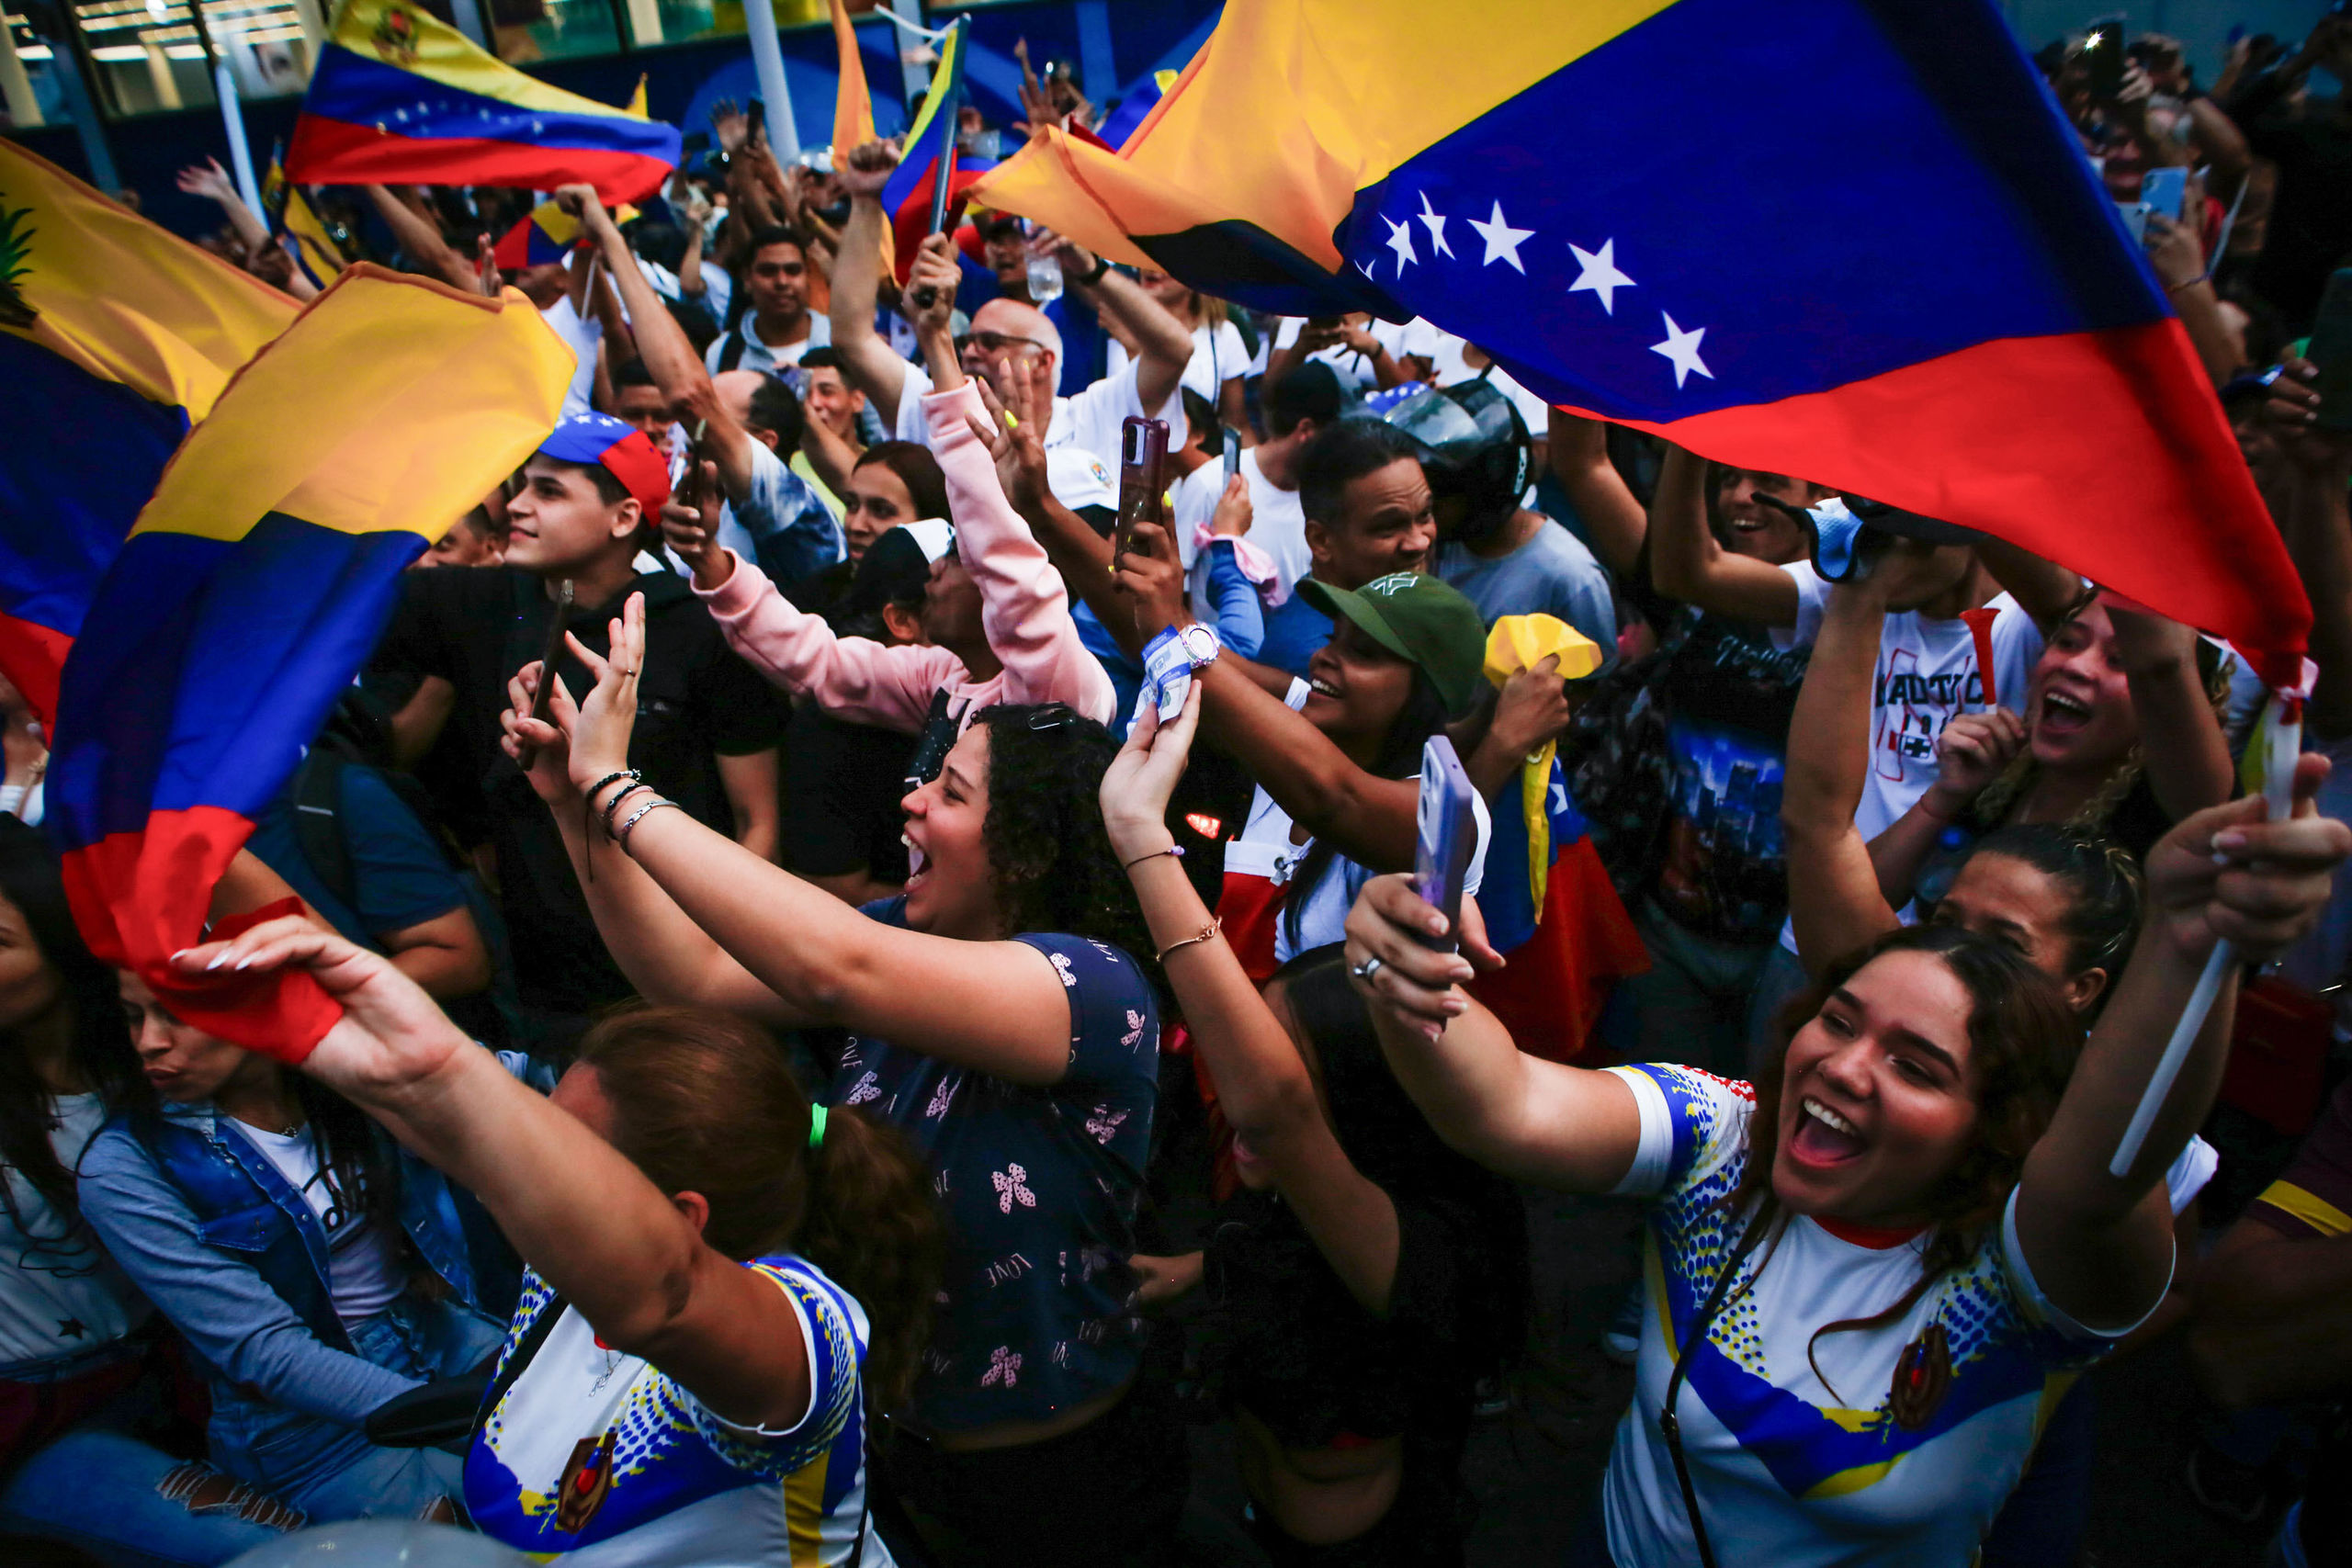 La tiranía venezolana es derrotada por el espíritu democrático